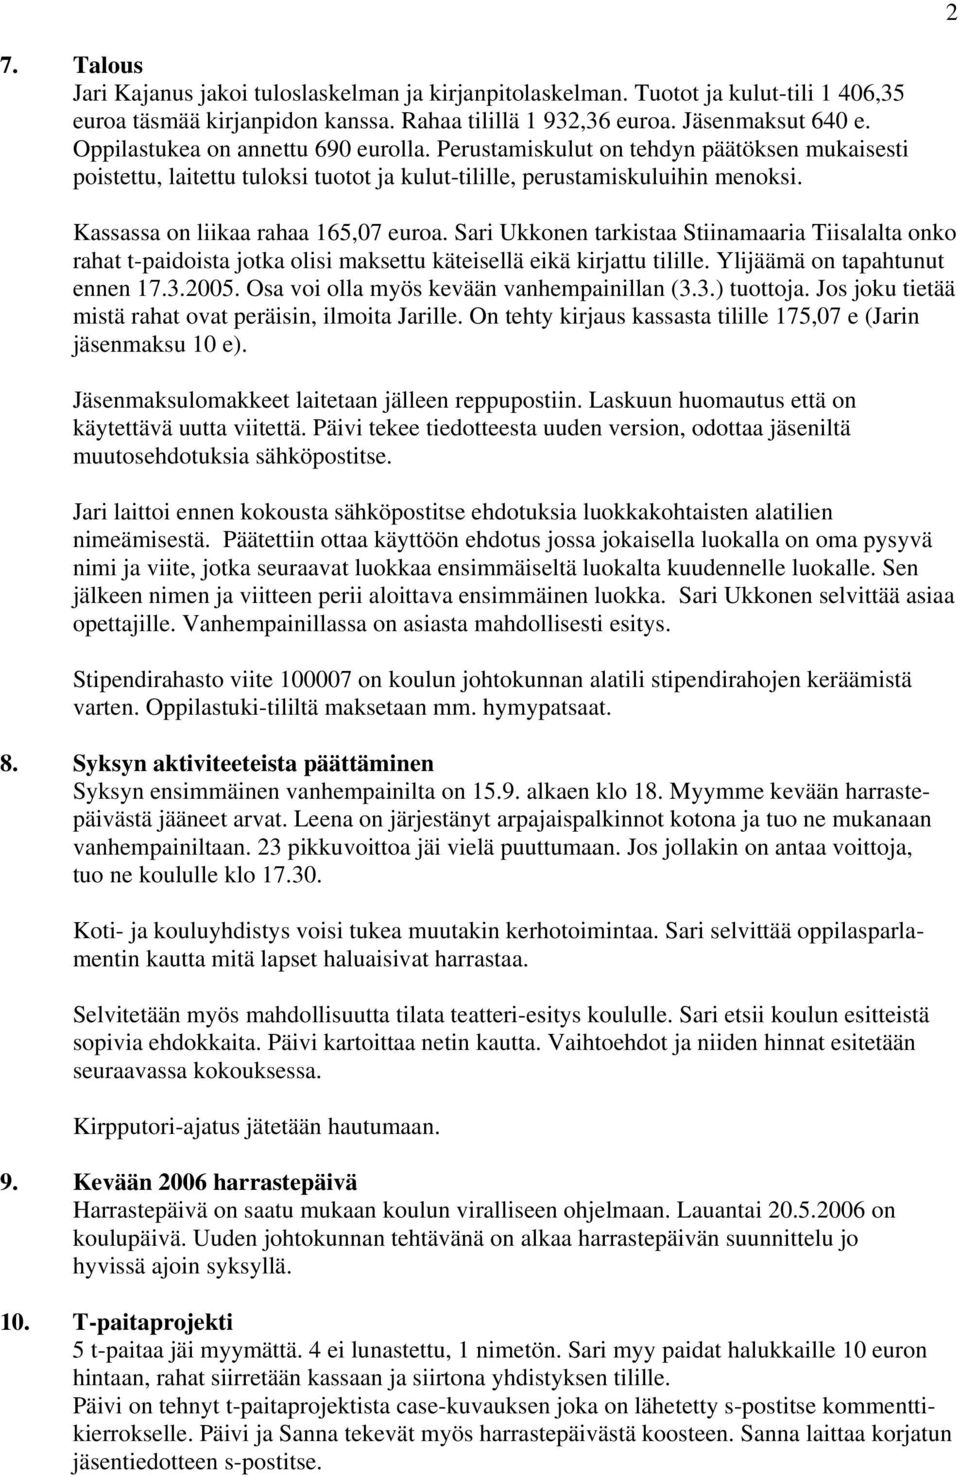 Kassassa on liikaa rahaa 165,07 euroa. Sari Ukkonen tarkistaa Stiinamaaria Tiisalalta onko rahat t-paidoista jotka olisi maksettu käteisellä eikä kirjattu tilille. Ylijäämä on tapahtunut ennen 17.3.